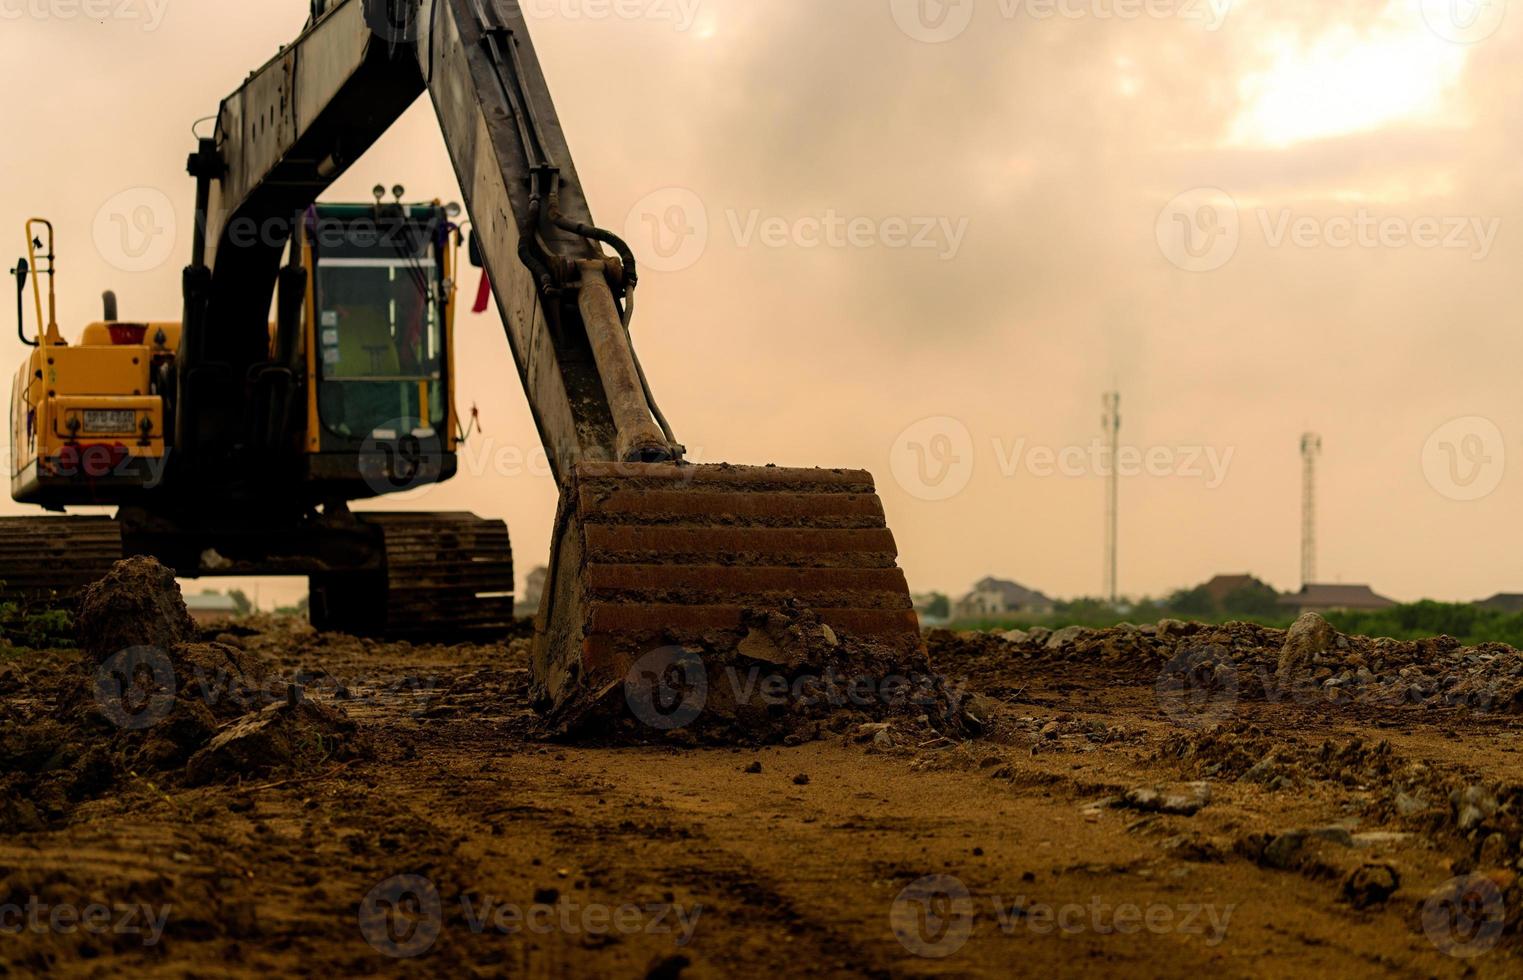 traktorgrävare parkerad på byggarbetsplatsen efter att ha grävt jord. närbild hink med bulldozer. grävare efter jobbet. jordflyttningsmaskin på byggarbetsplatsen för bostadsområde. grävare med smutshink och jord. foto